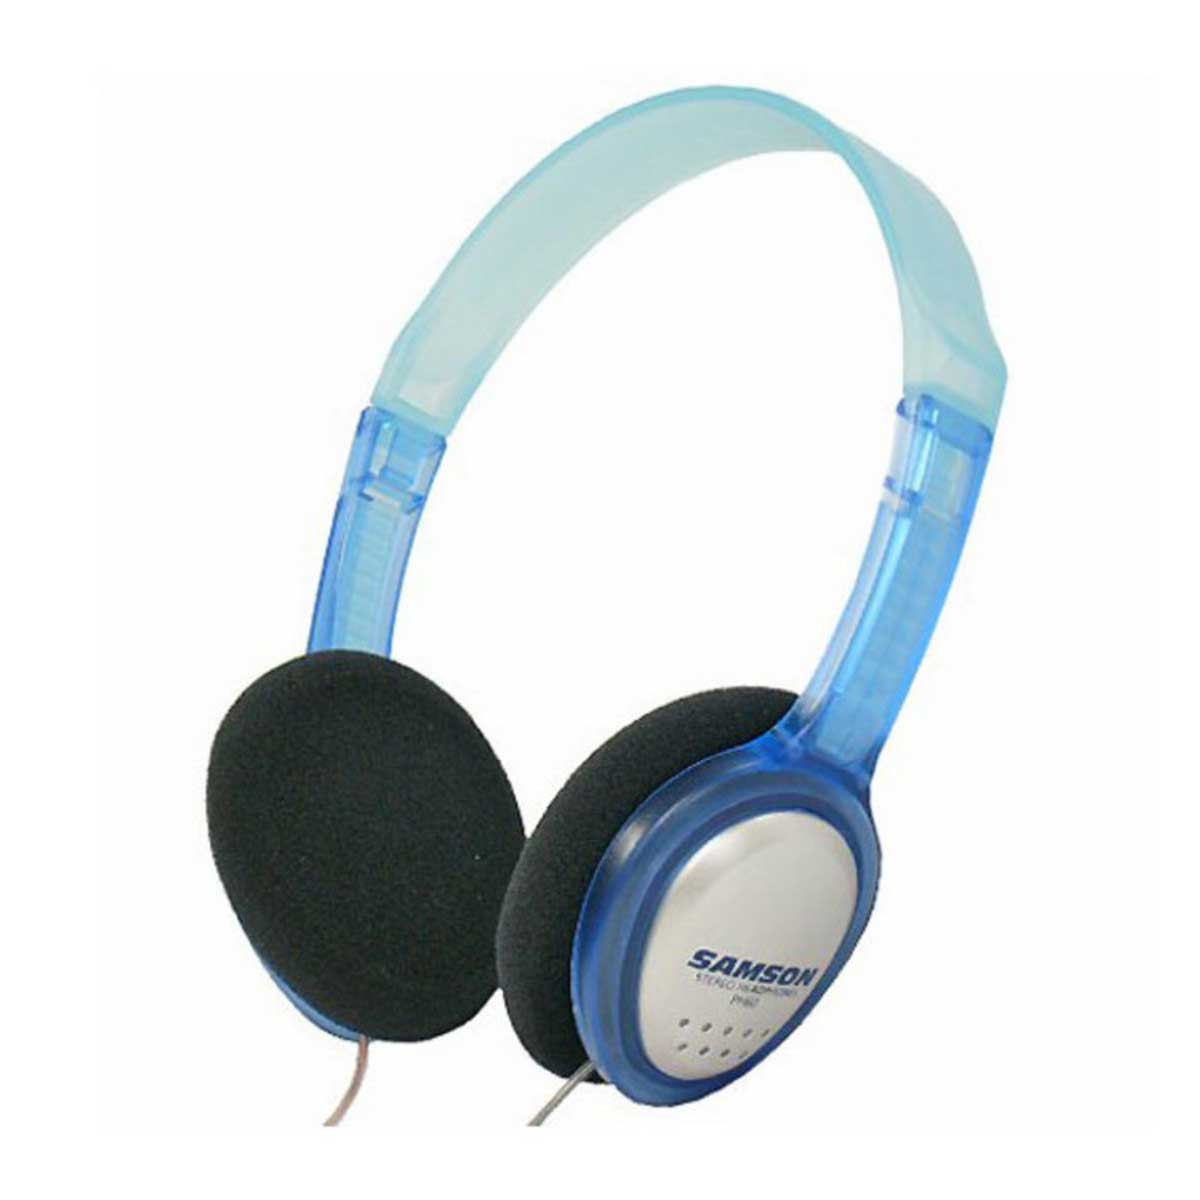 Samson PH60 Stereo-Kopfhörer mit 3,5mm Klinke und Adapter auf 6,3mm Klinke